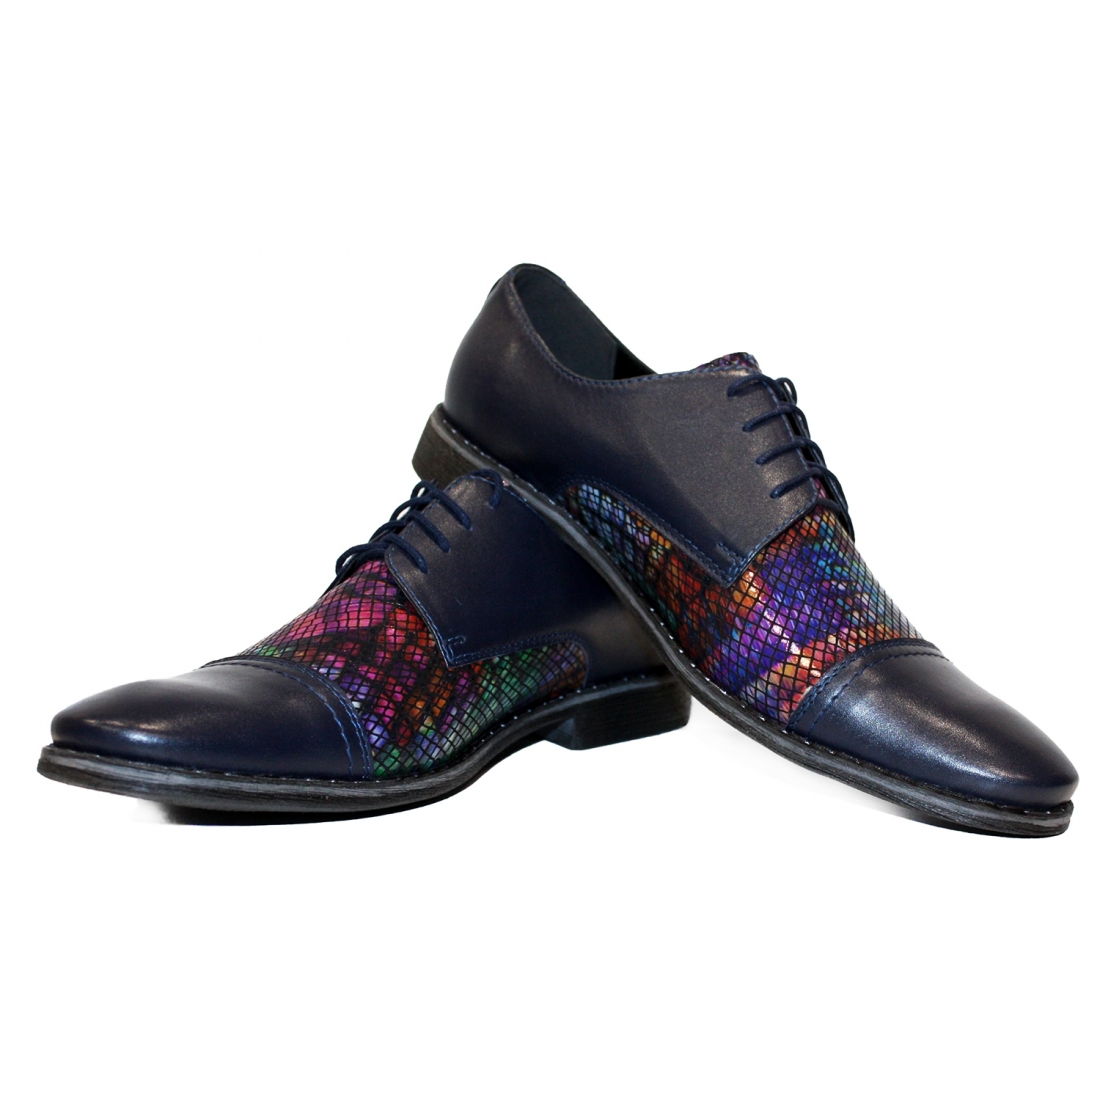 Modello Cubello - Buty Klasyczne - Handmade Colorful Italian Leather Shoes